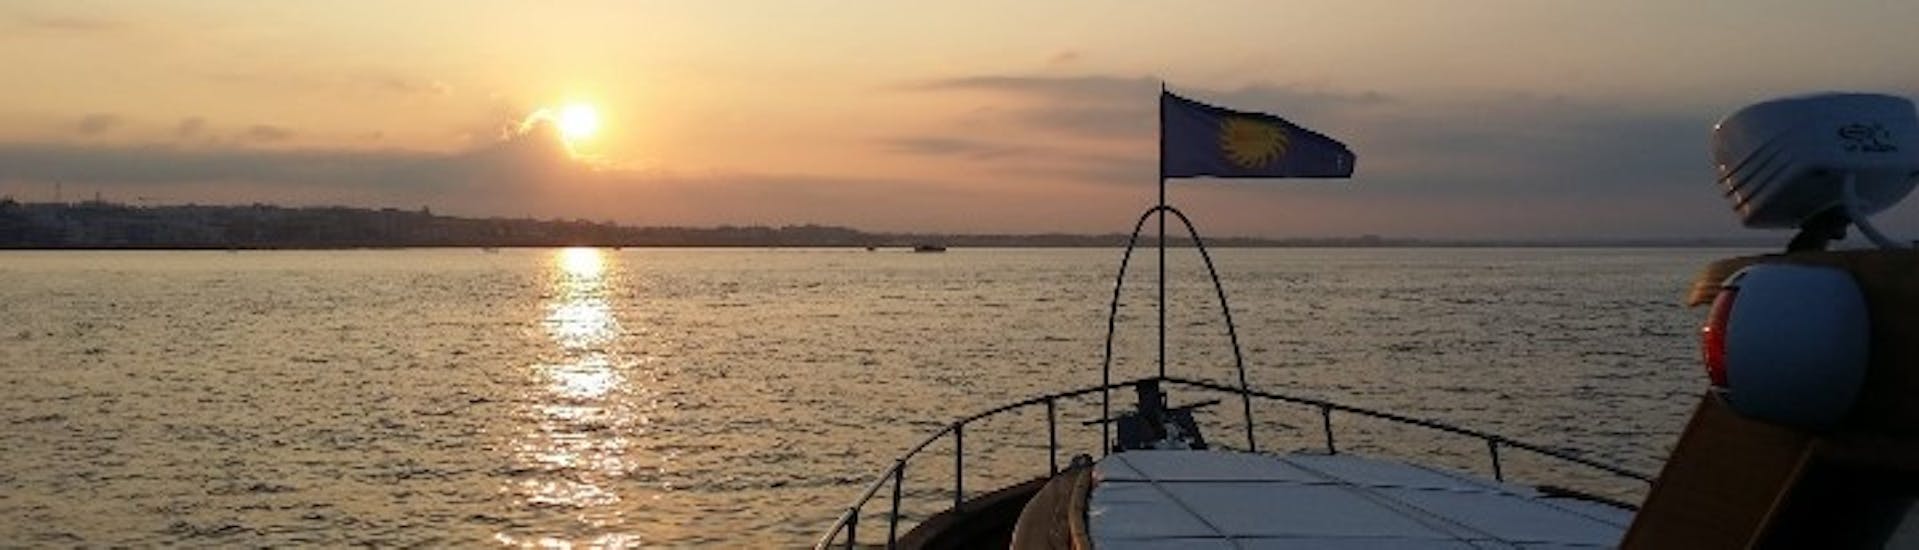 Giro al tramonto lungo la costa di Cefalù con cena e snorkeling.